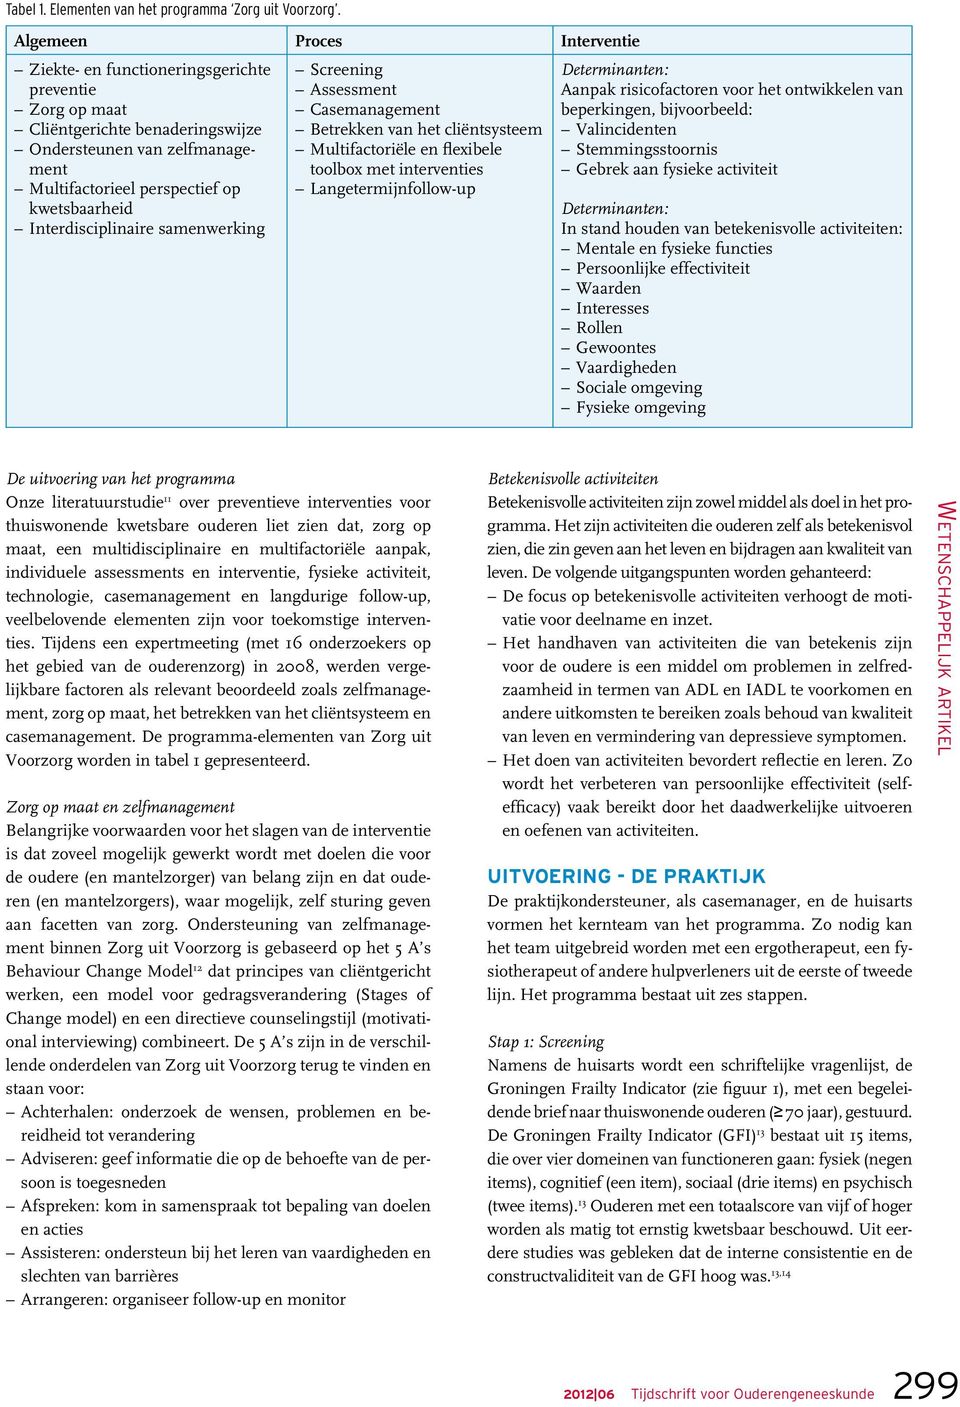 Interdisciplinaire samenwerking Screening Assessment Casemanagement Betrekken van het cliëntsysteem Multifactoriële en flexibele toolbox met interventies Langetermijnfollow-up Determinanten: Aanpak